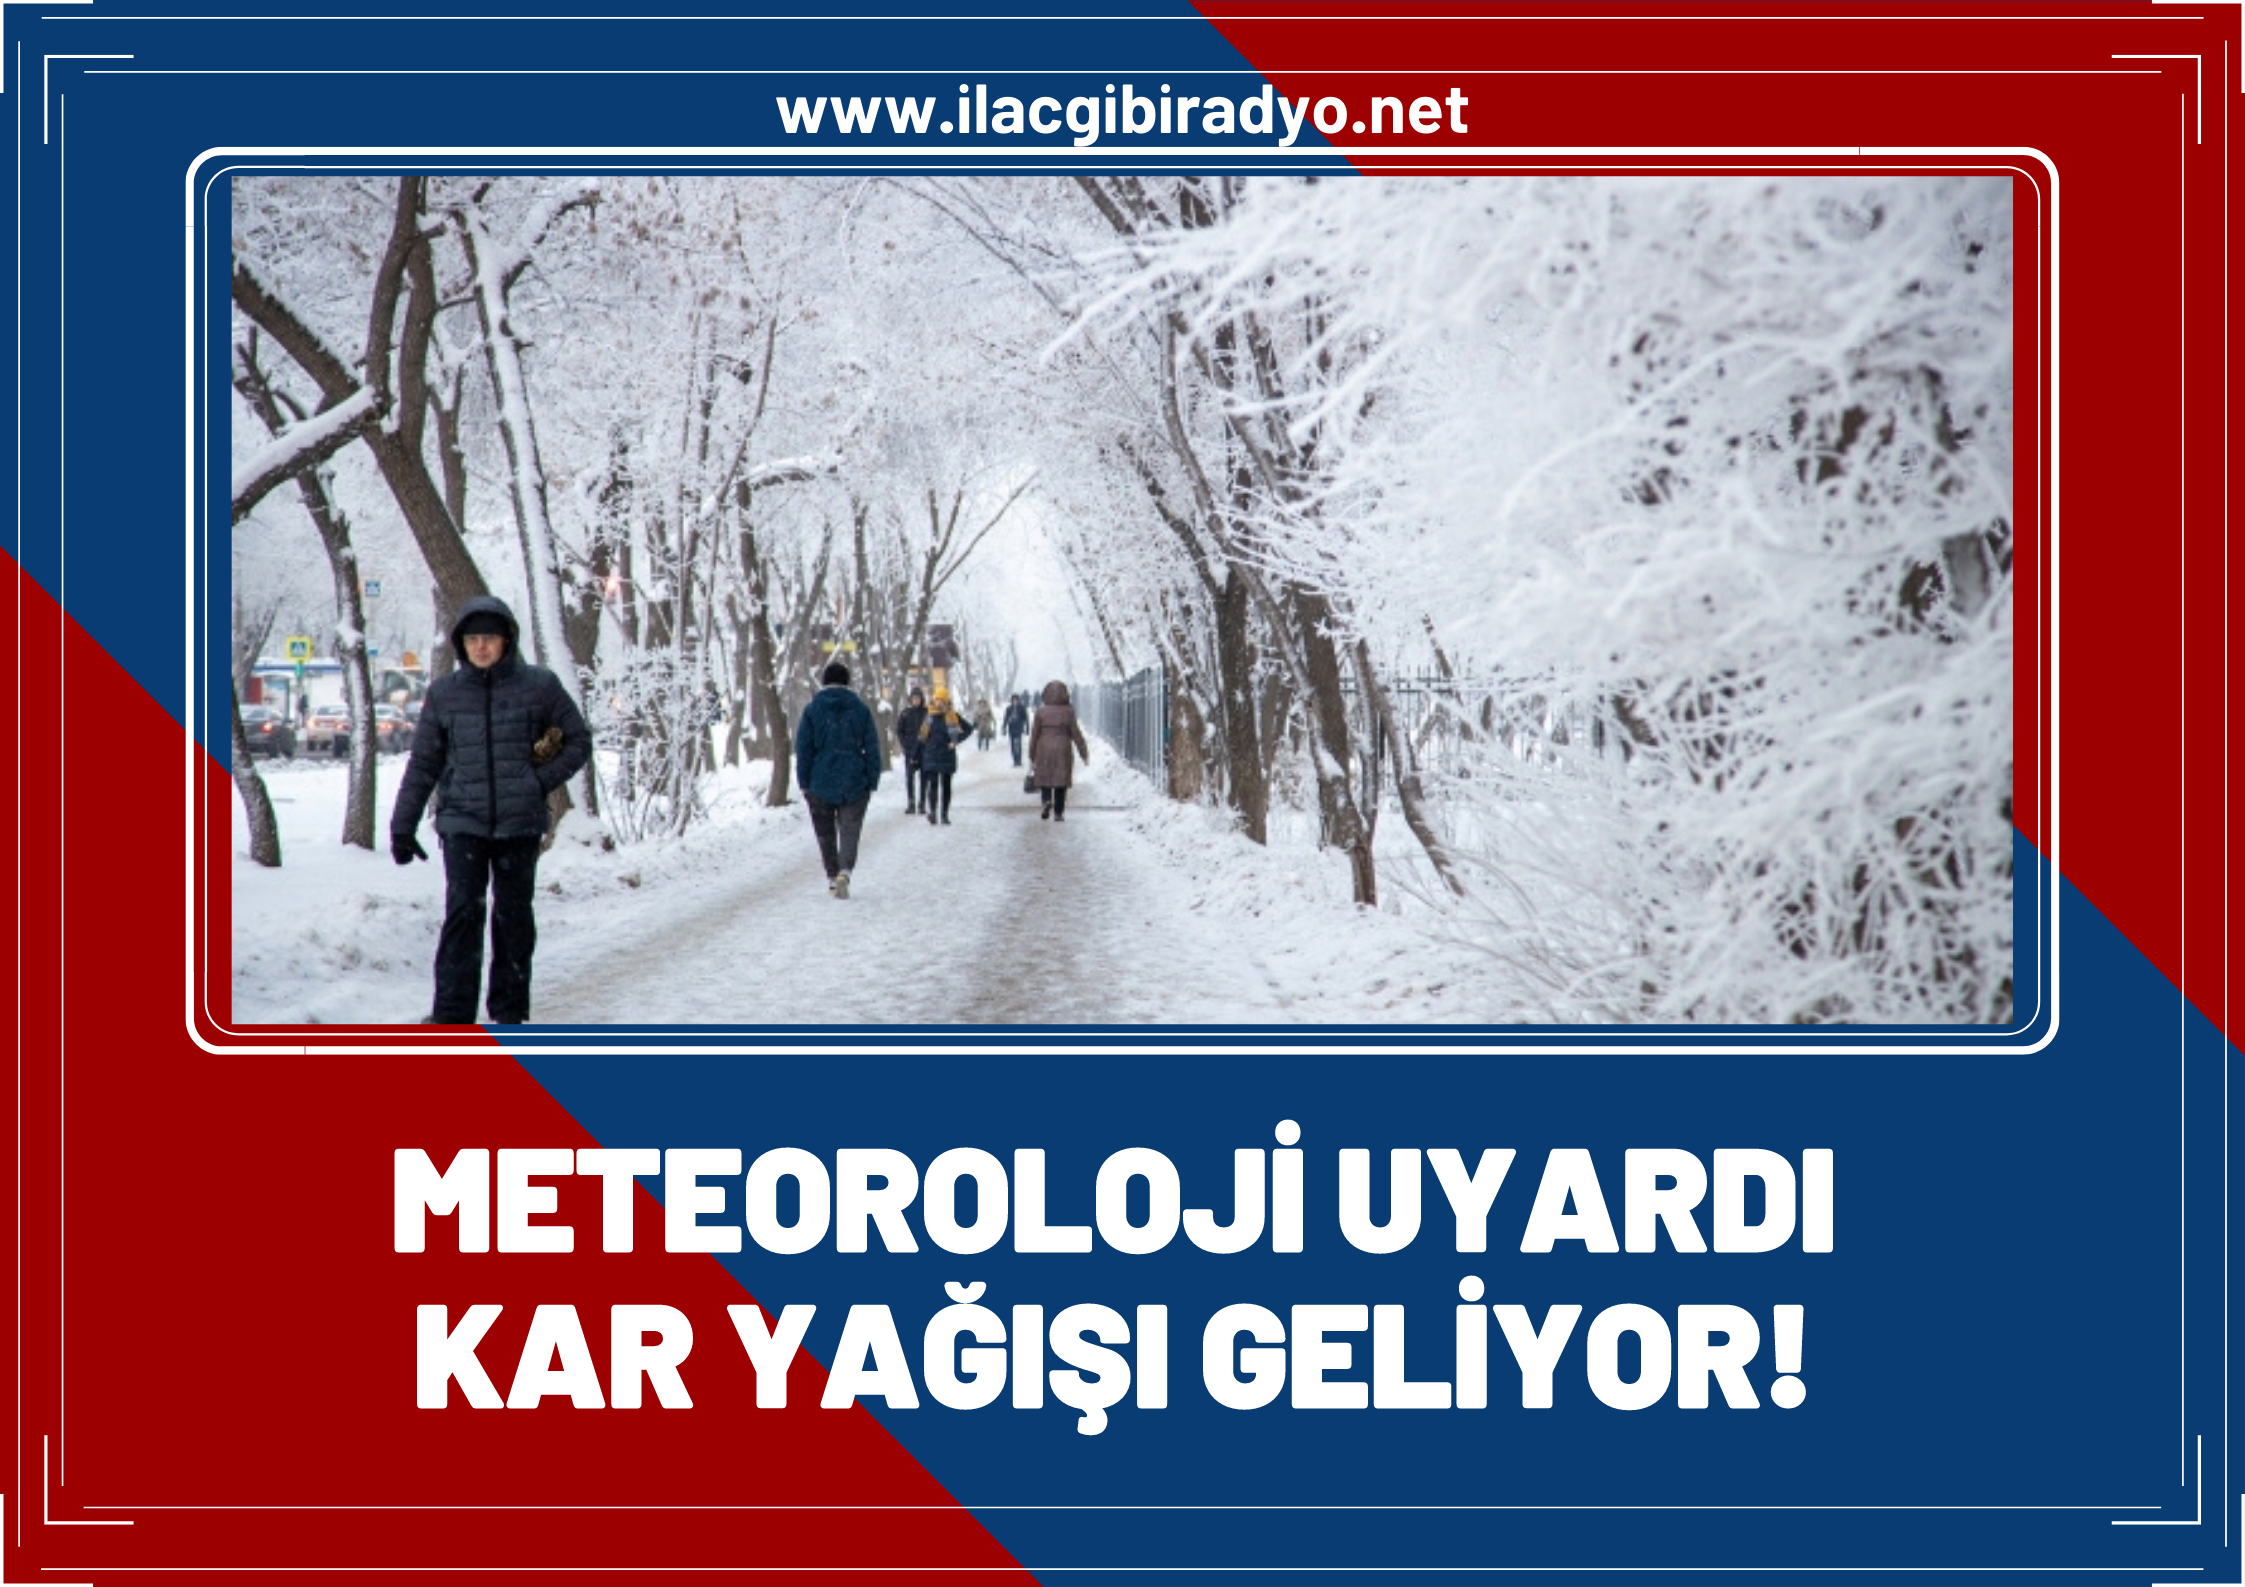 Meteoroloji'den Van, Hakkari ve Erzurum için flaş uyarı! Gece saatlerine dikkat!